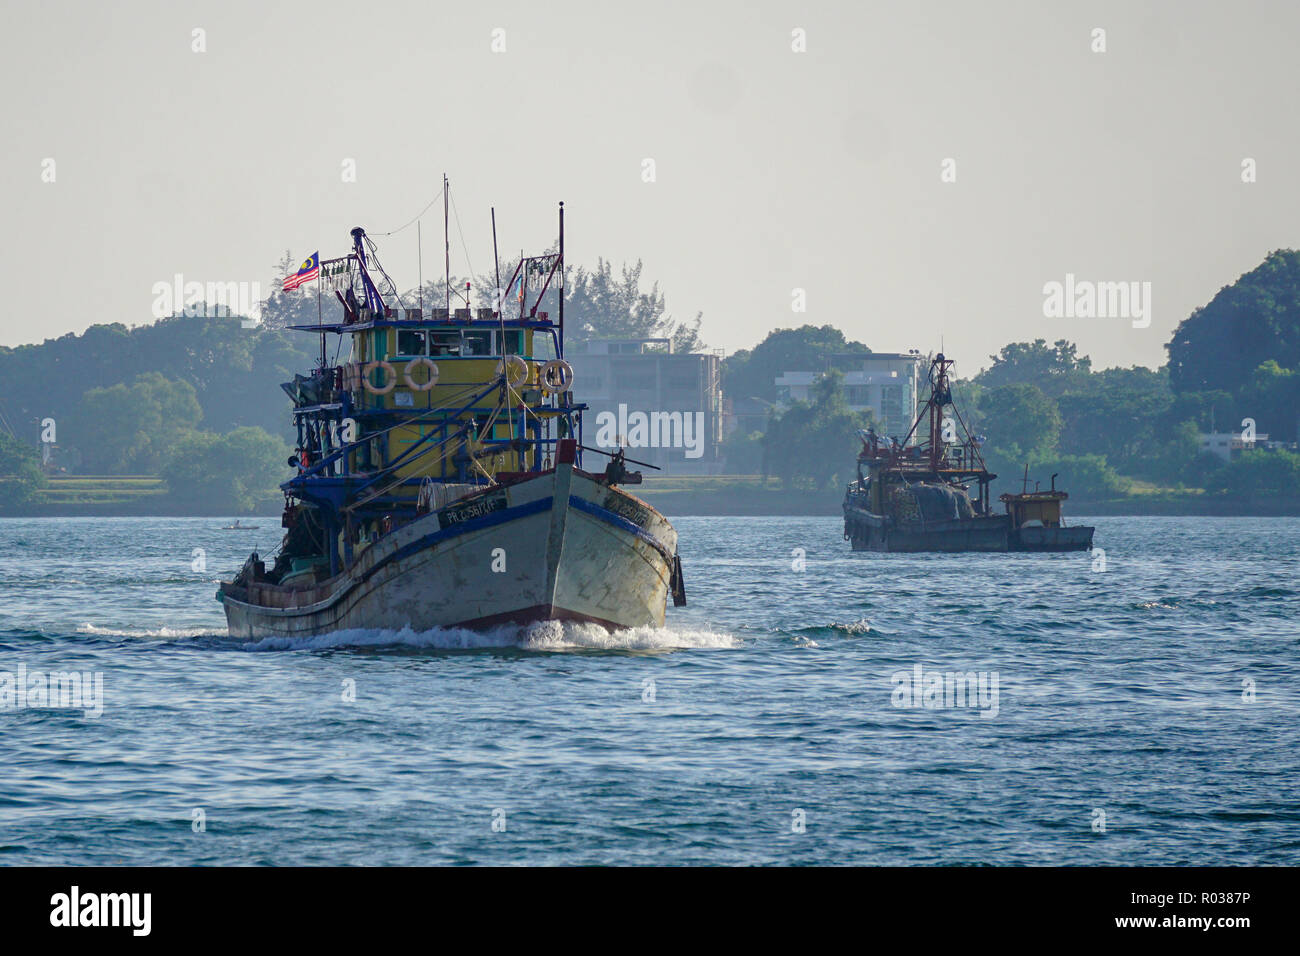 Kota Kinabalu Sabah Malaysia - Aug 15, 2018 : Fishing vessel seen at Kota Kinabalu seafront on Apr 13, 2017. Stock Photo